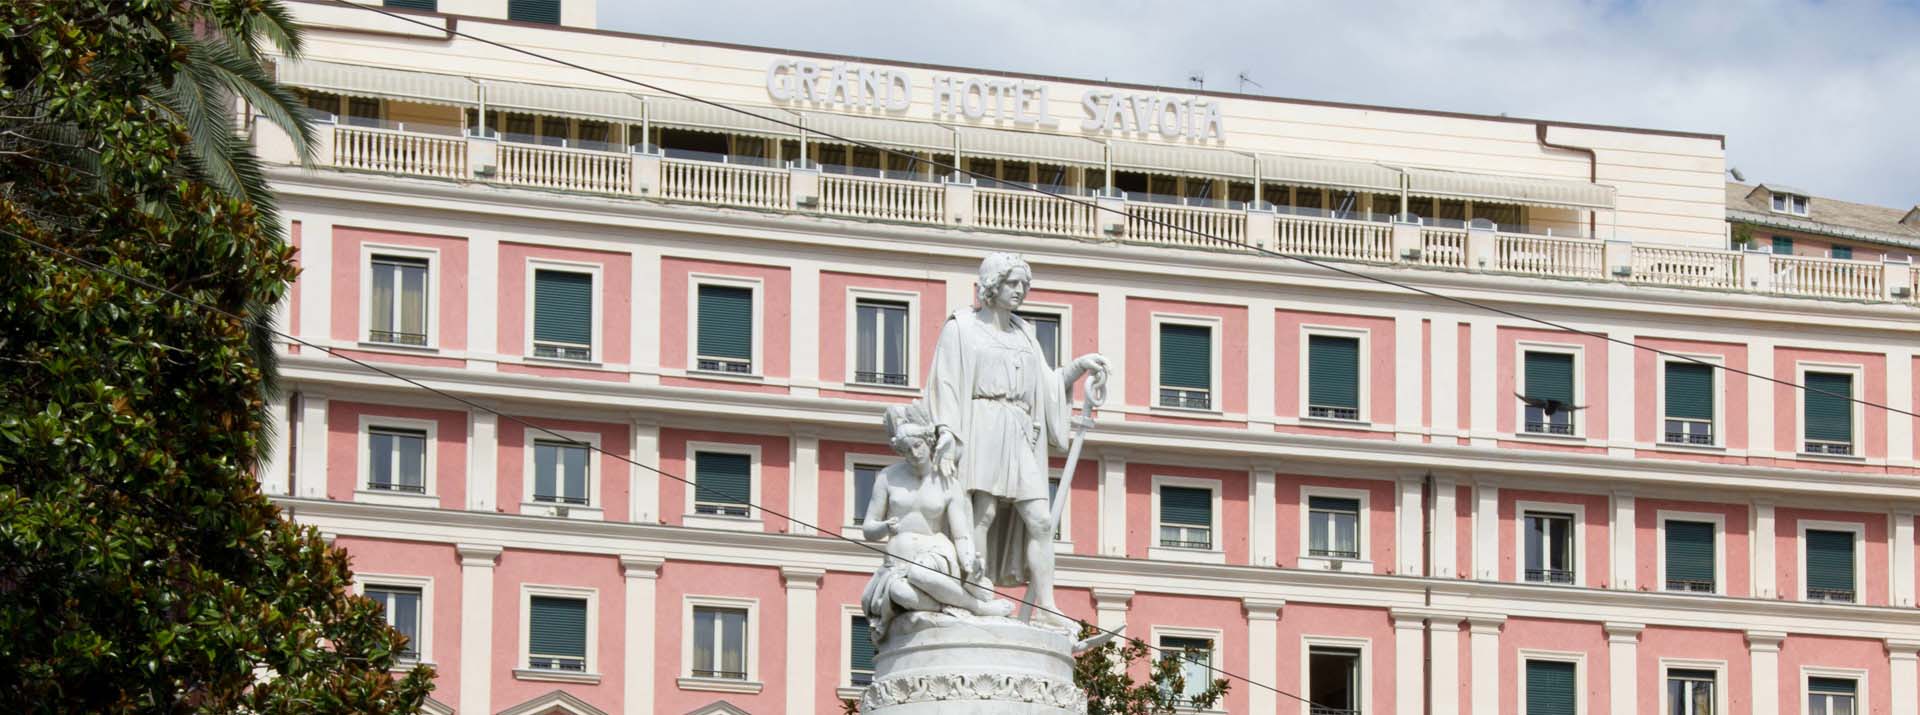 Restauro del Grand Hotel Savoia a Genova a cura di Boero